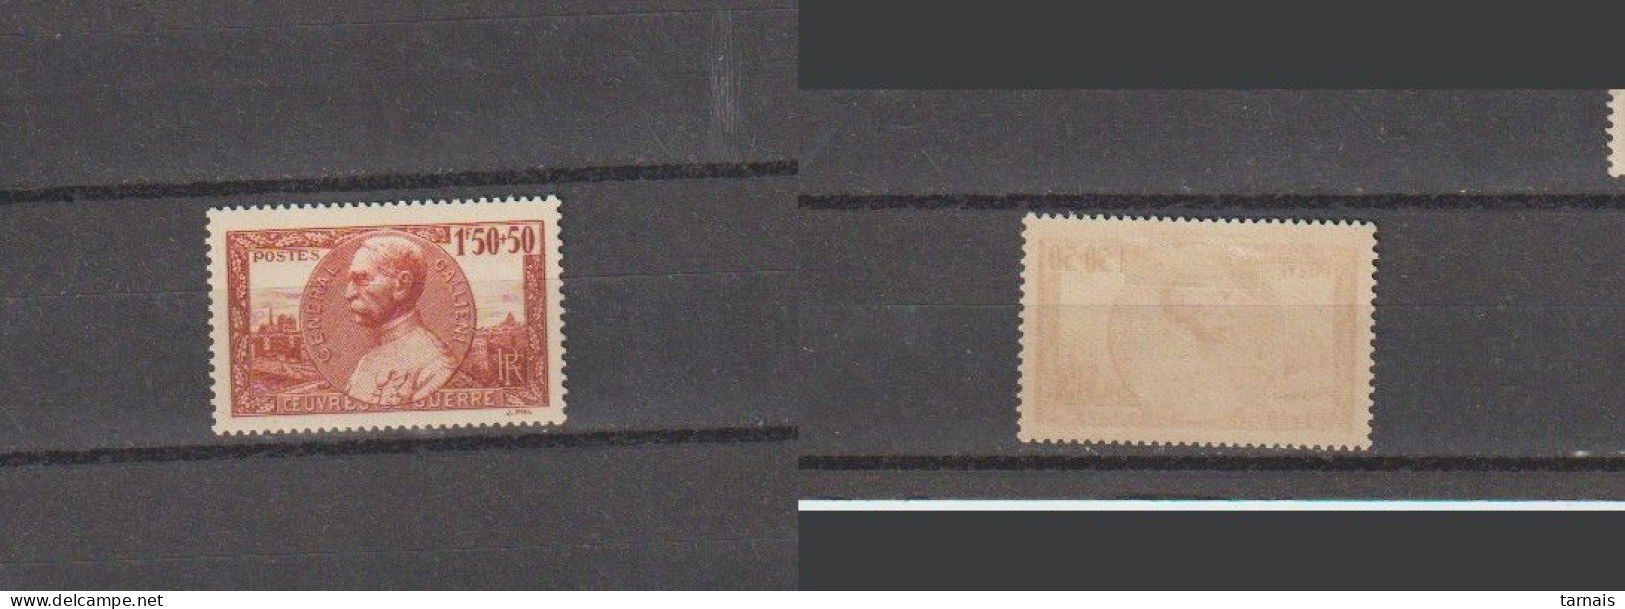 1940 N°456 Galliéni Neuf * (lot 361) - Unused Stamps